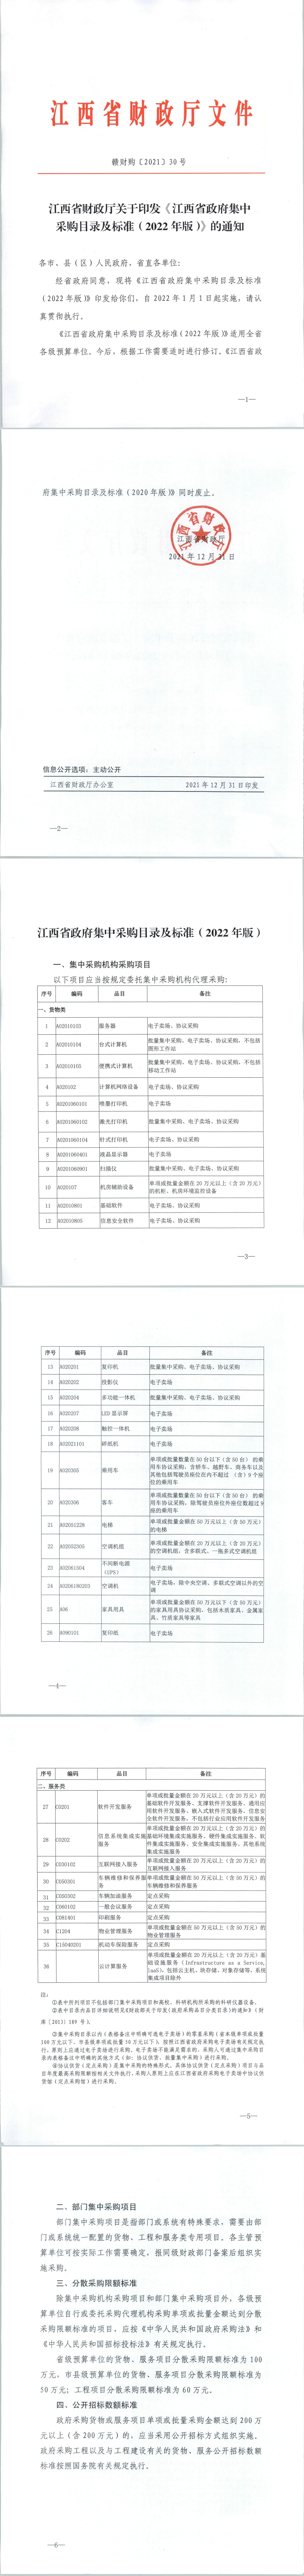 江西省政府集中采购目录及标准 2022_00.jpg